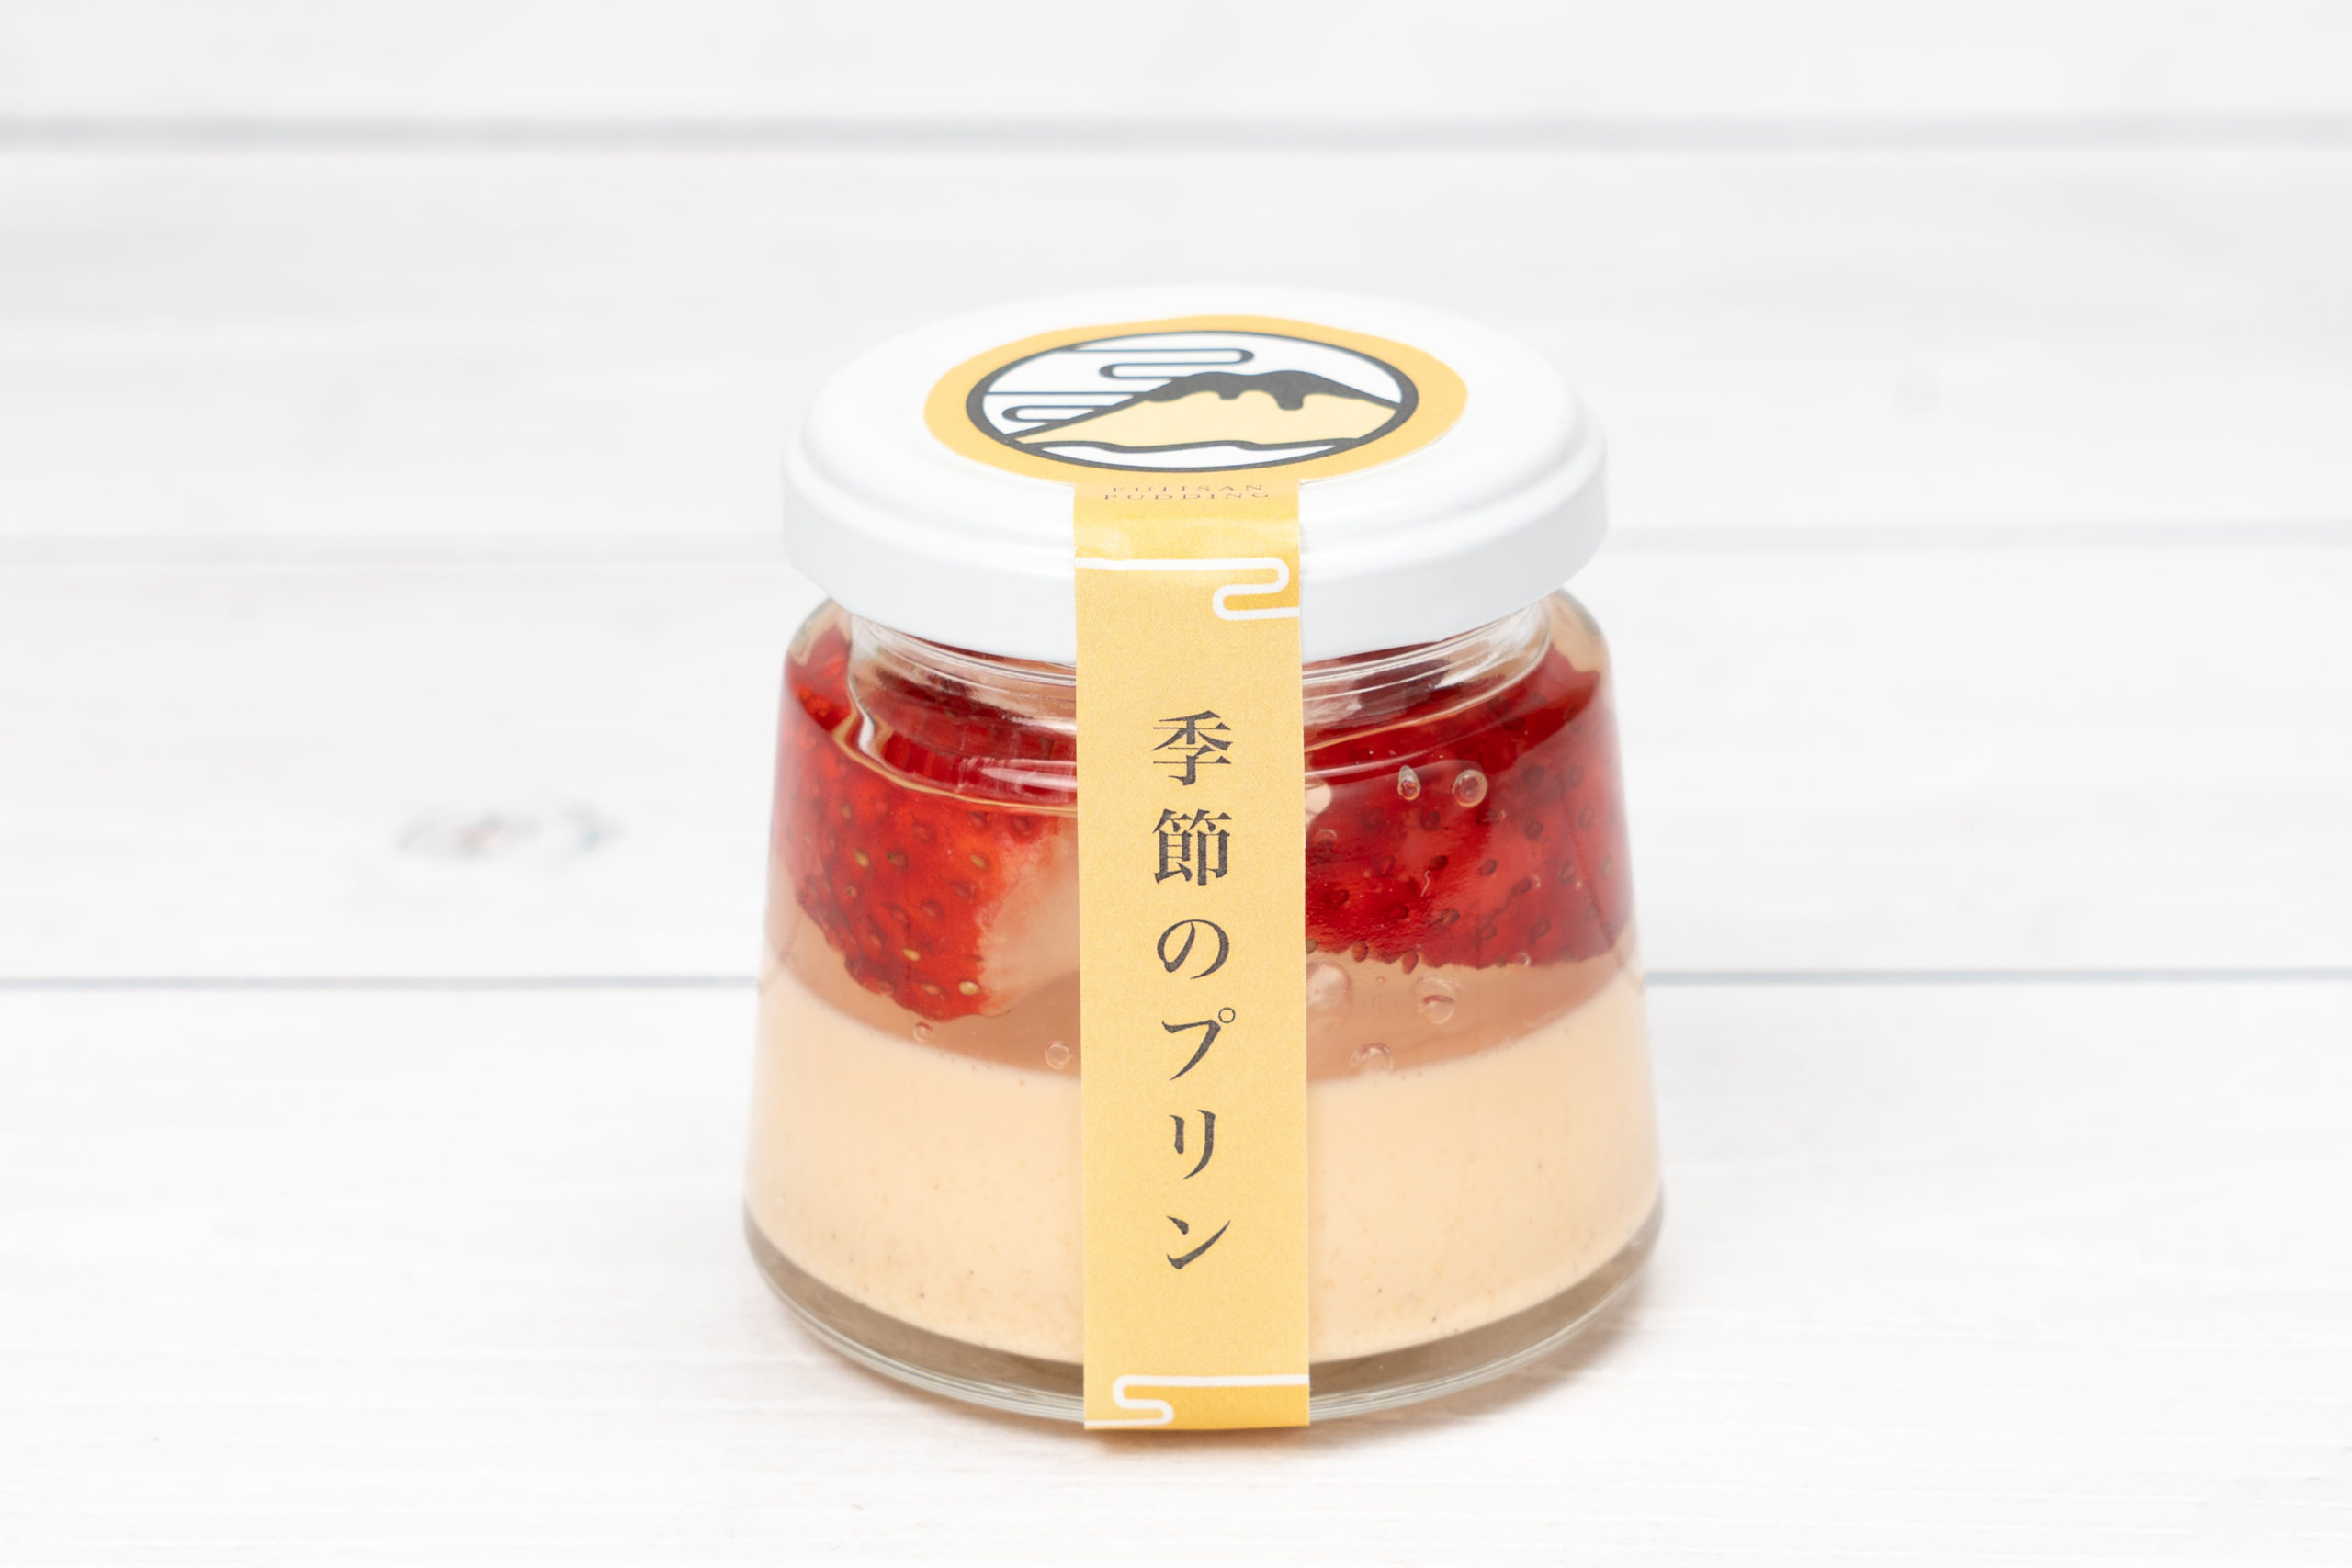 プリン専門店「富士山ぷりん」の旬のいちごを使用した季節のプリン